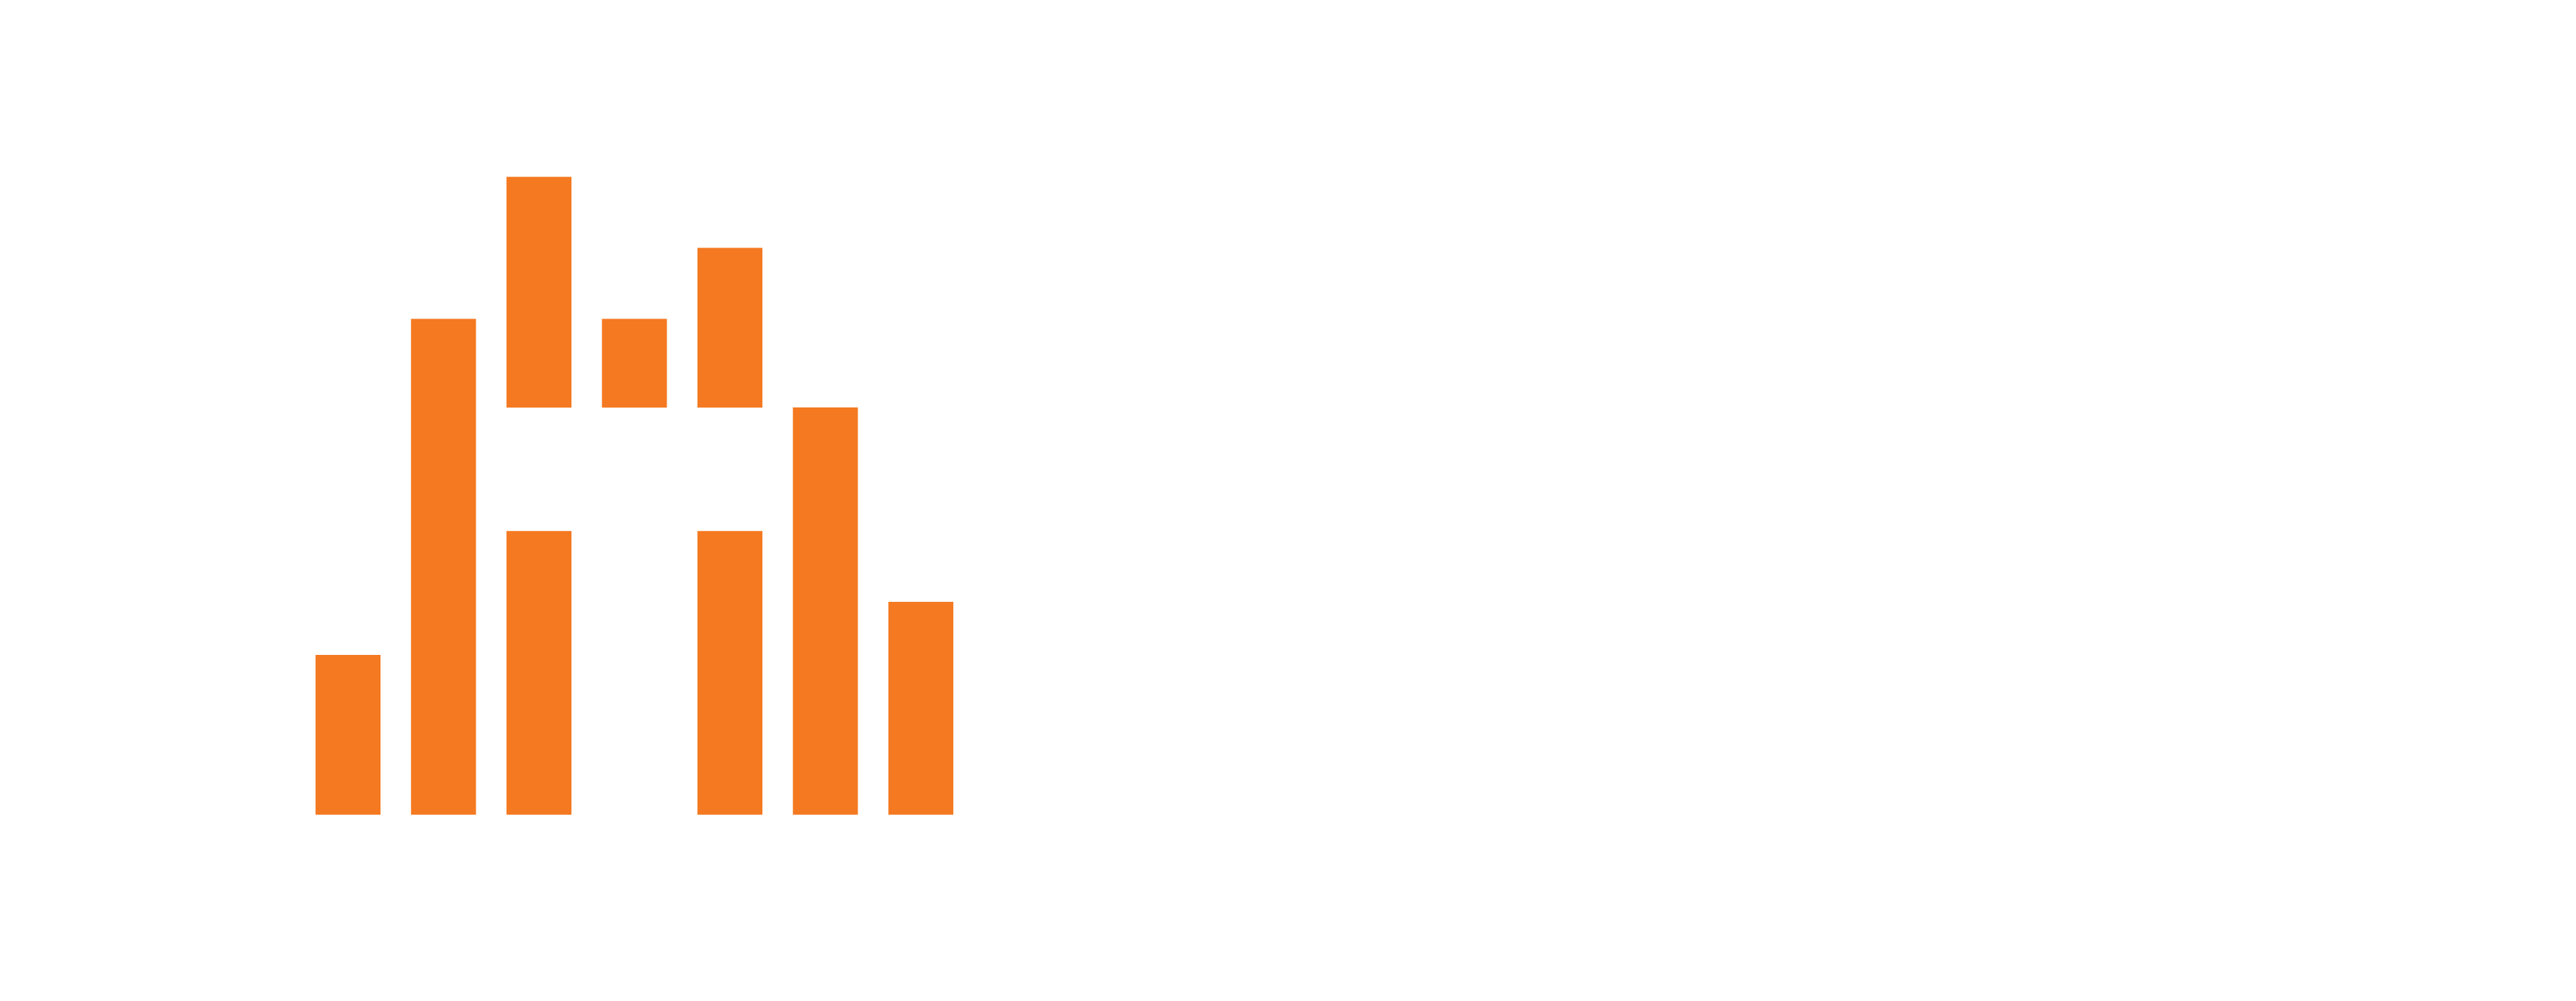 Telos Alliance_Logo_2020_Orange_White